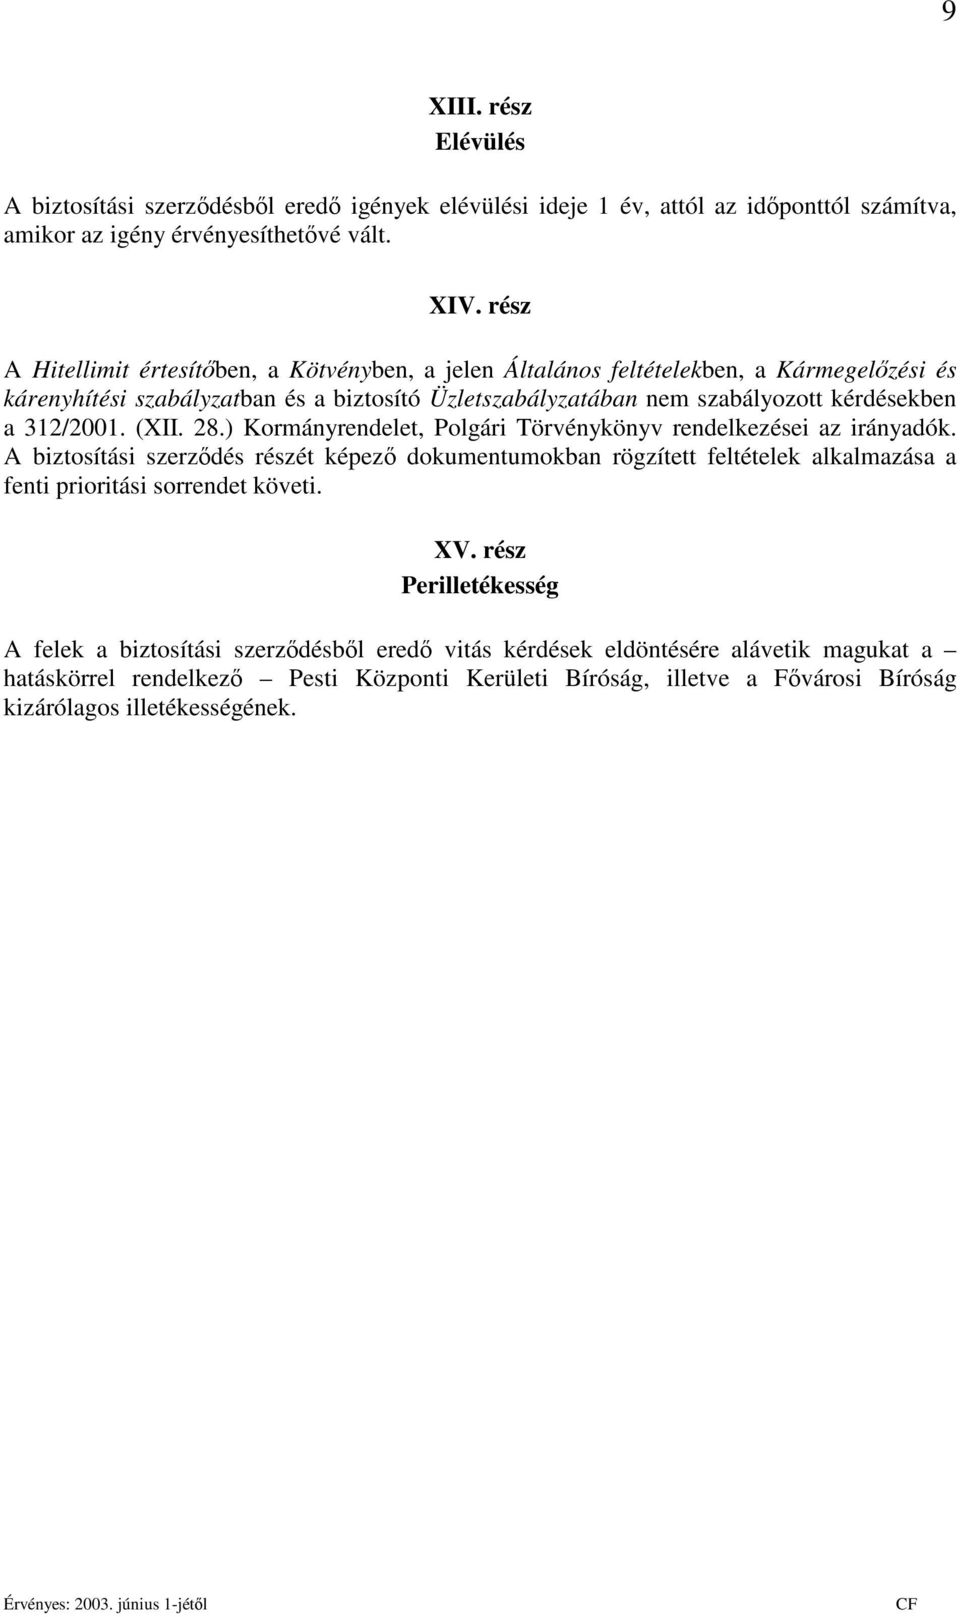 312/2001. (XII. 28.) Kormányrendelet, Polgári Törvénykönyv rendelkezései az irányadók.